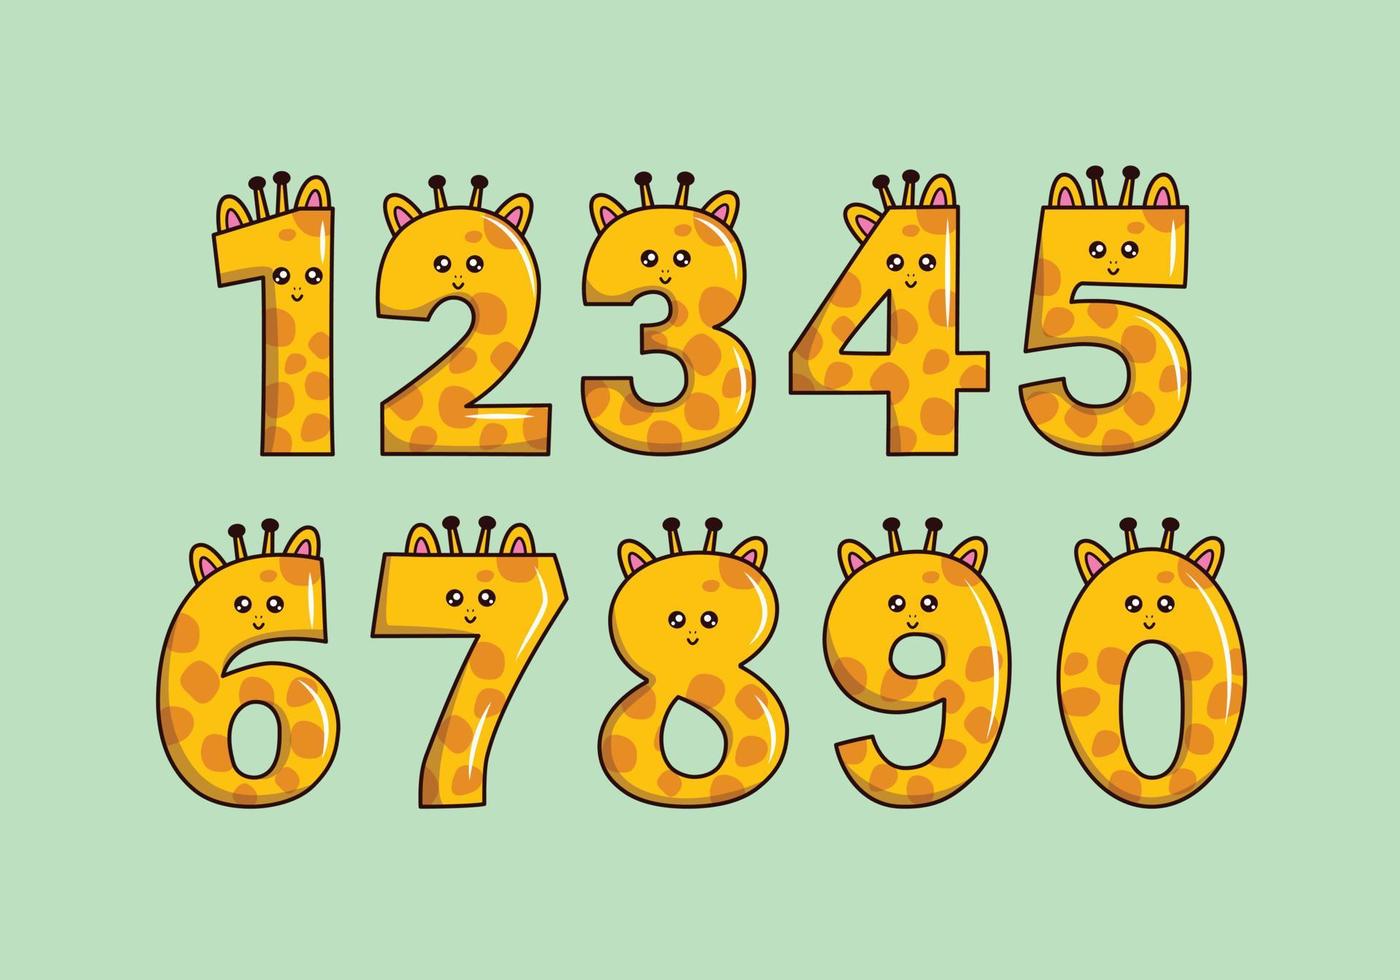 jolie collection de girafes jaunes avec numérotation pour la fête d'anniversaire, l'éducation des enfants, l'ornement, l'élément, etc. vecteur